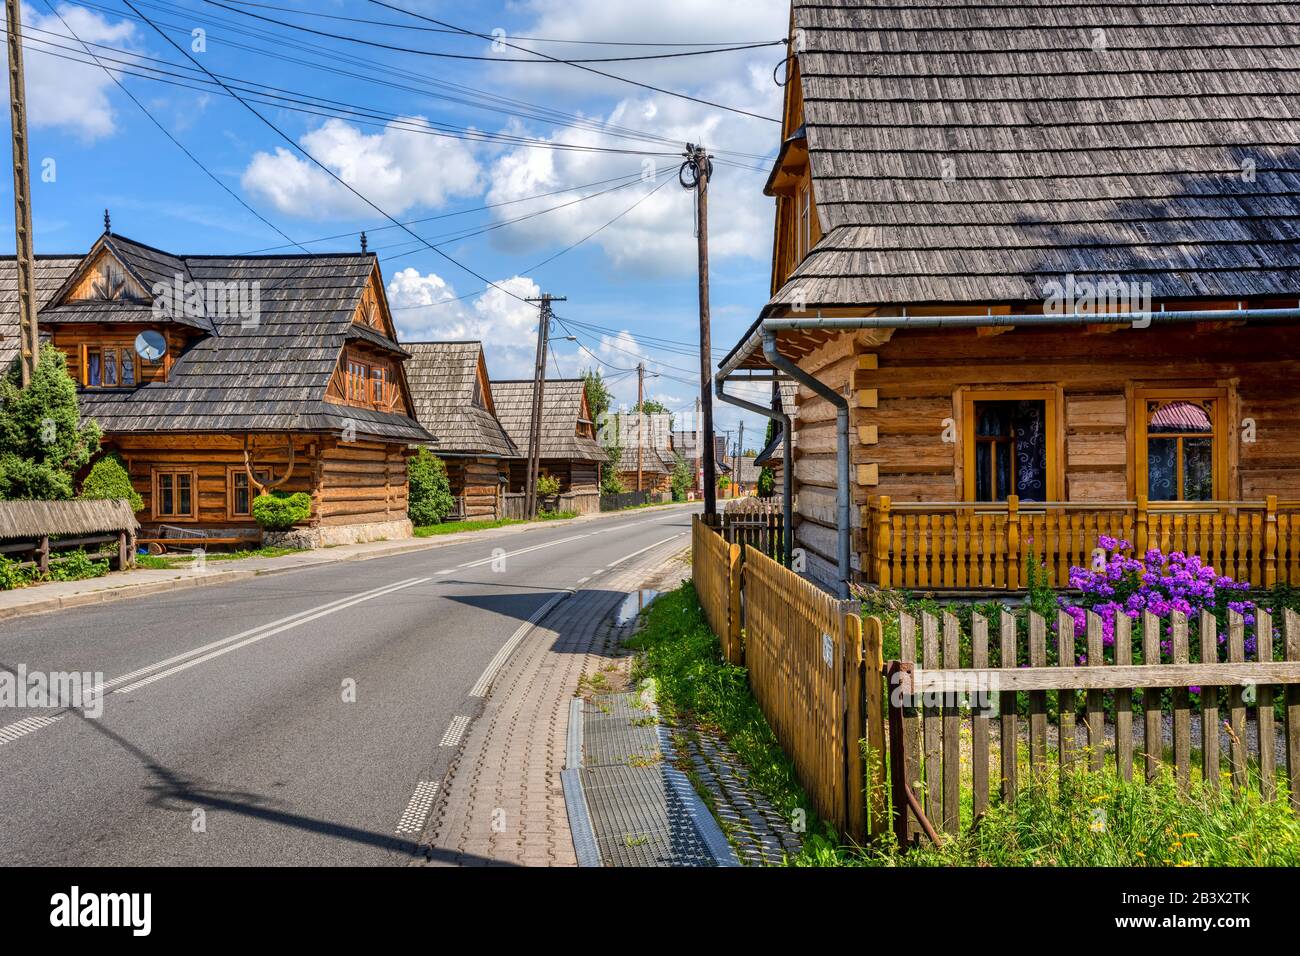 Maisons en bois traditionnelles dans le village de Chocholow au sud de Cracovie, l'un des plus beaux villages de Pologne Banque D'Images